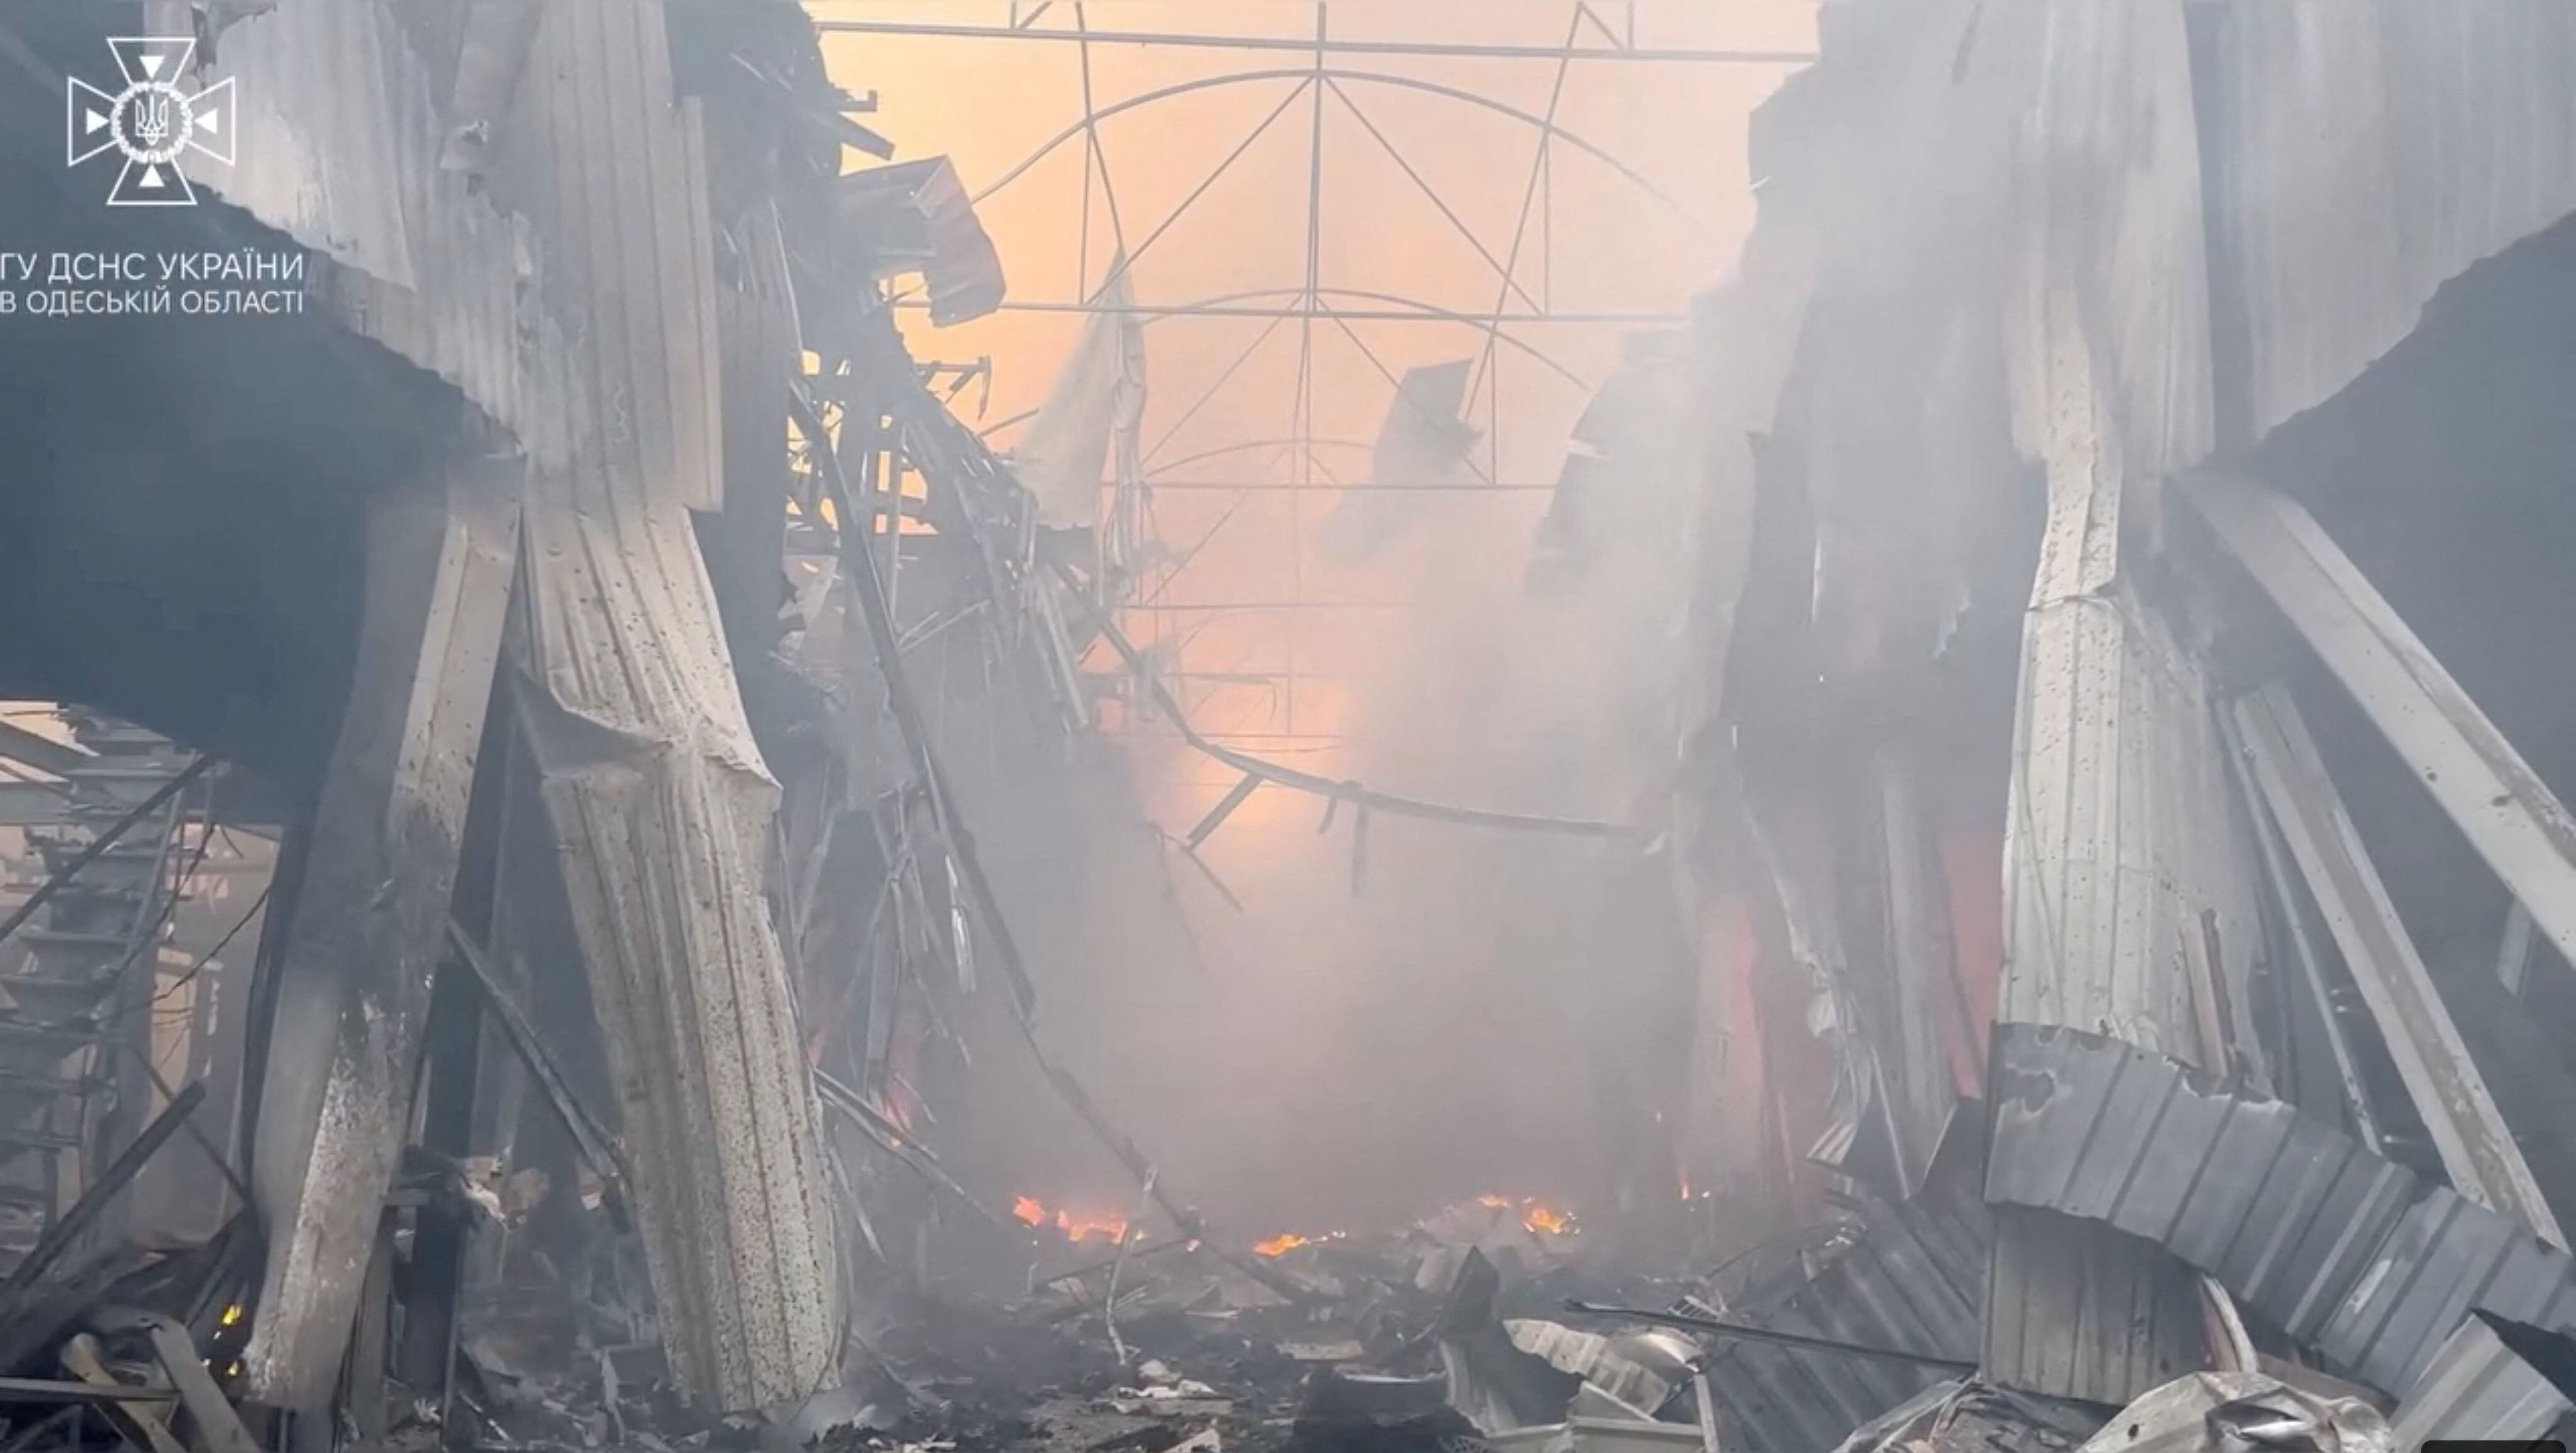 El ataque provocó además un incendio en la zona portuaria (Servicio Estatal de Emergencia de Ucrania en la región de Odesa a través de Facebook/Reuters)